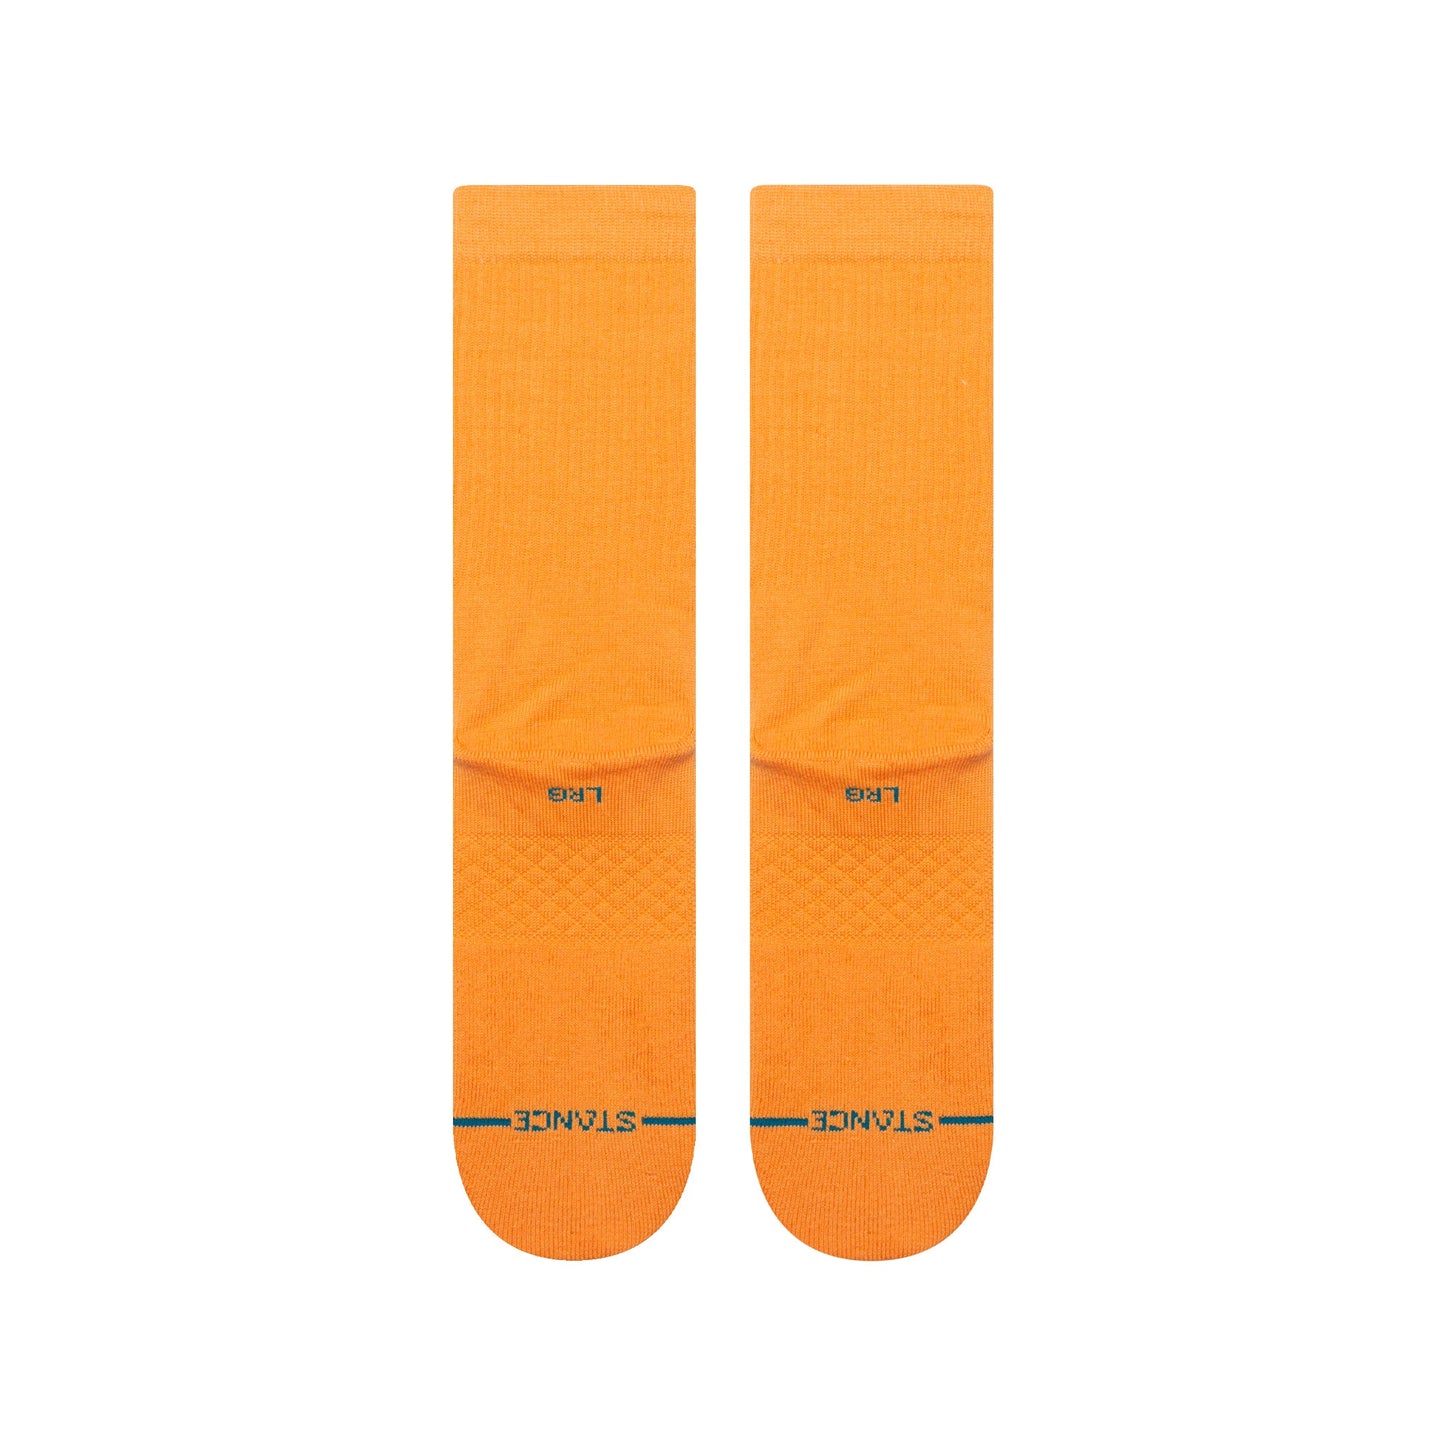 Chaussettes mi-mollet orange sand Icon de Stance